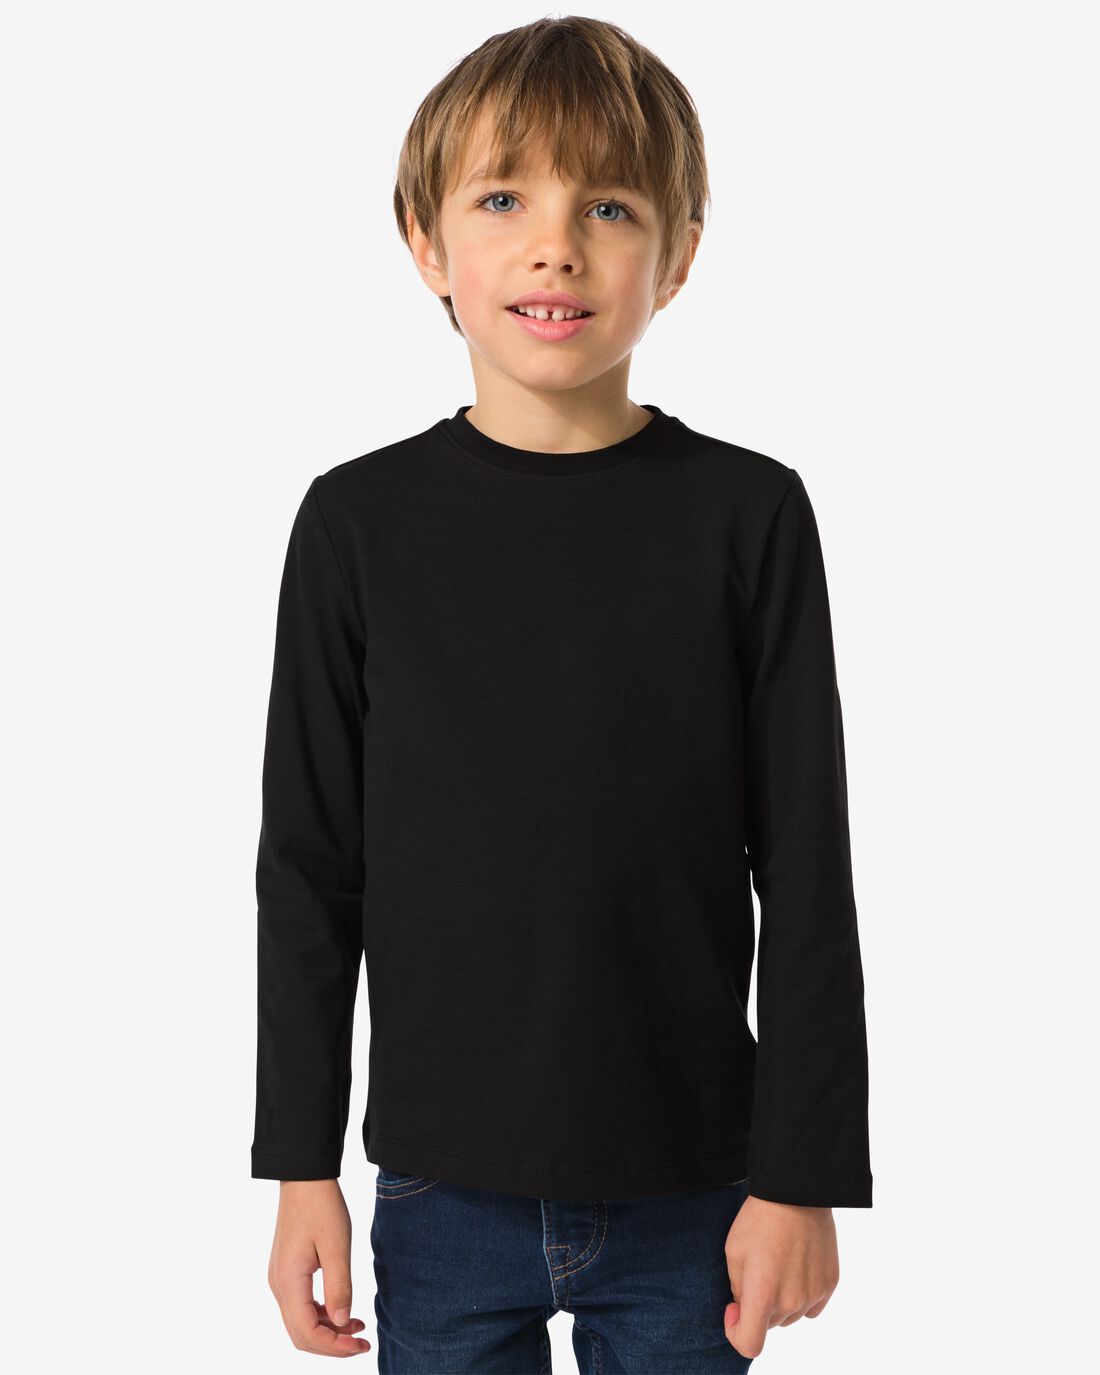 HEMA Kinder T-shirt Biologisch Katoen Zwart (zwart)